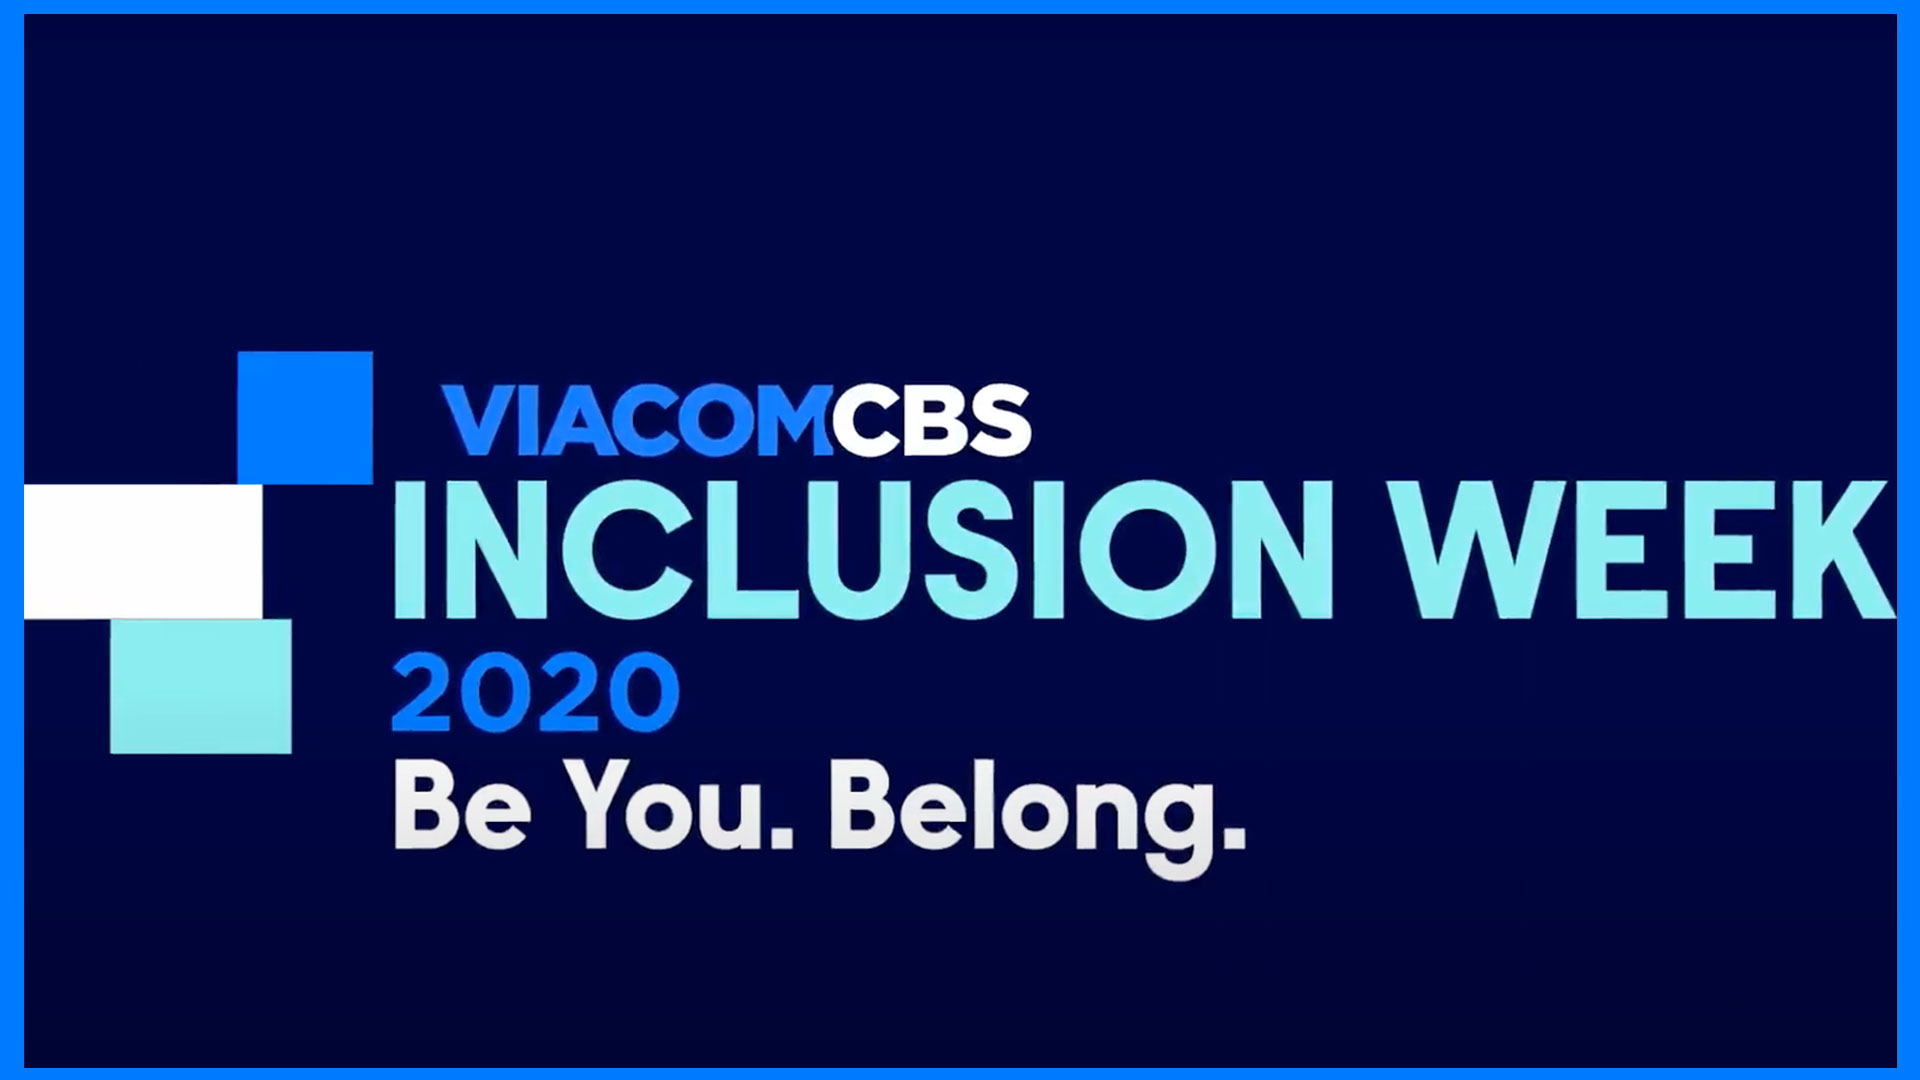 Inclusion week 2020